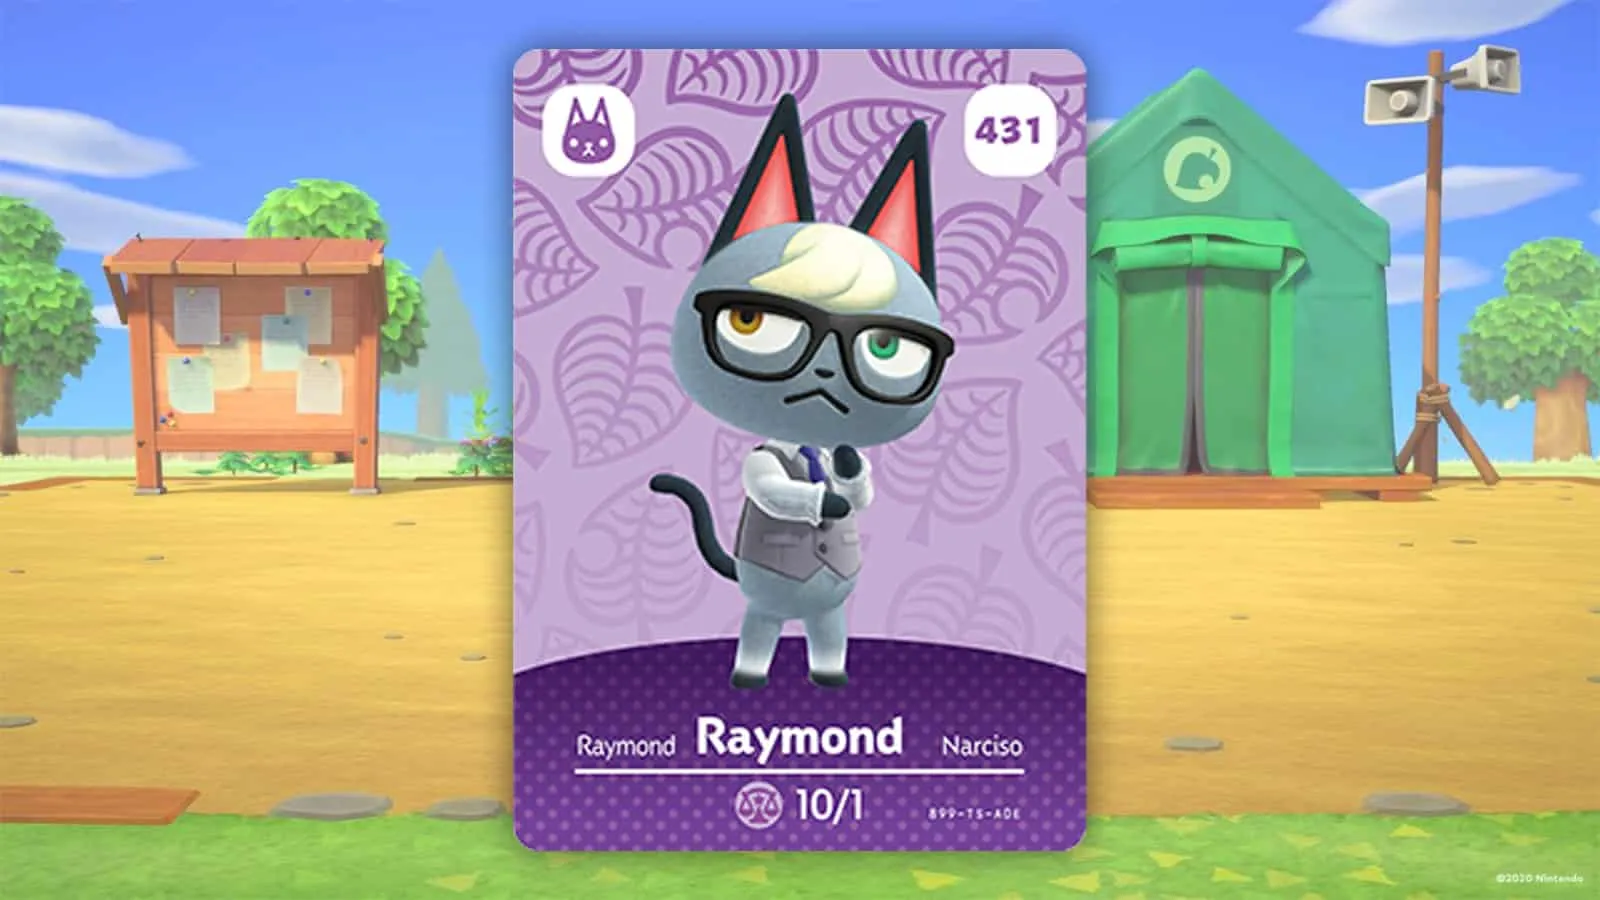 Raymong-amiibo-Karte in Animal Crossing New Horizons